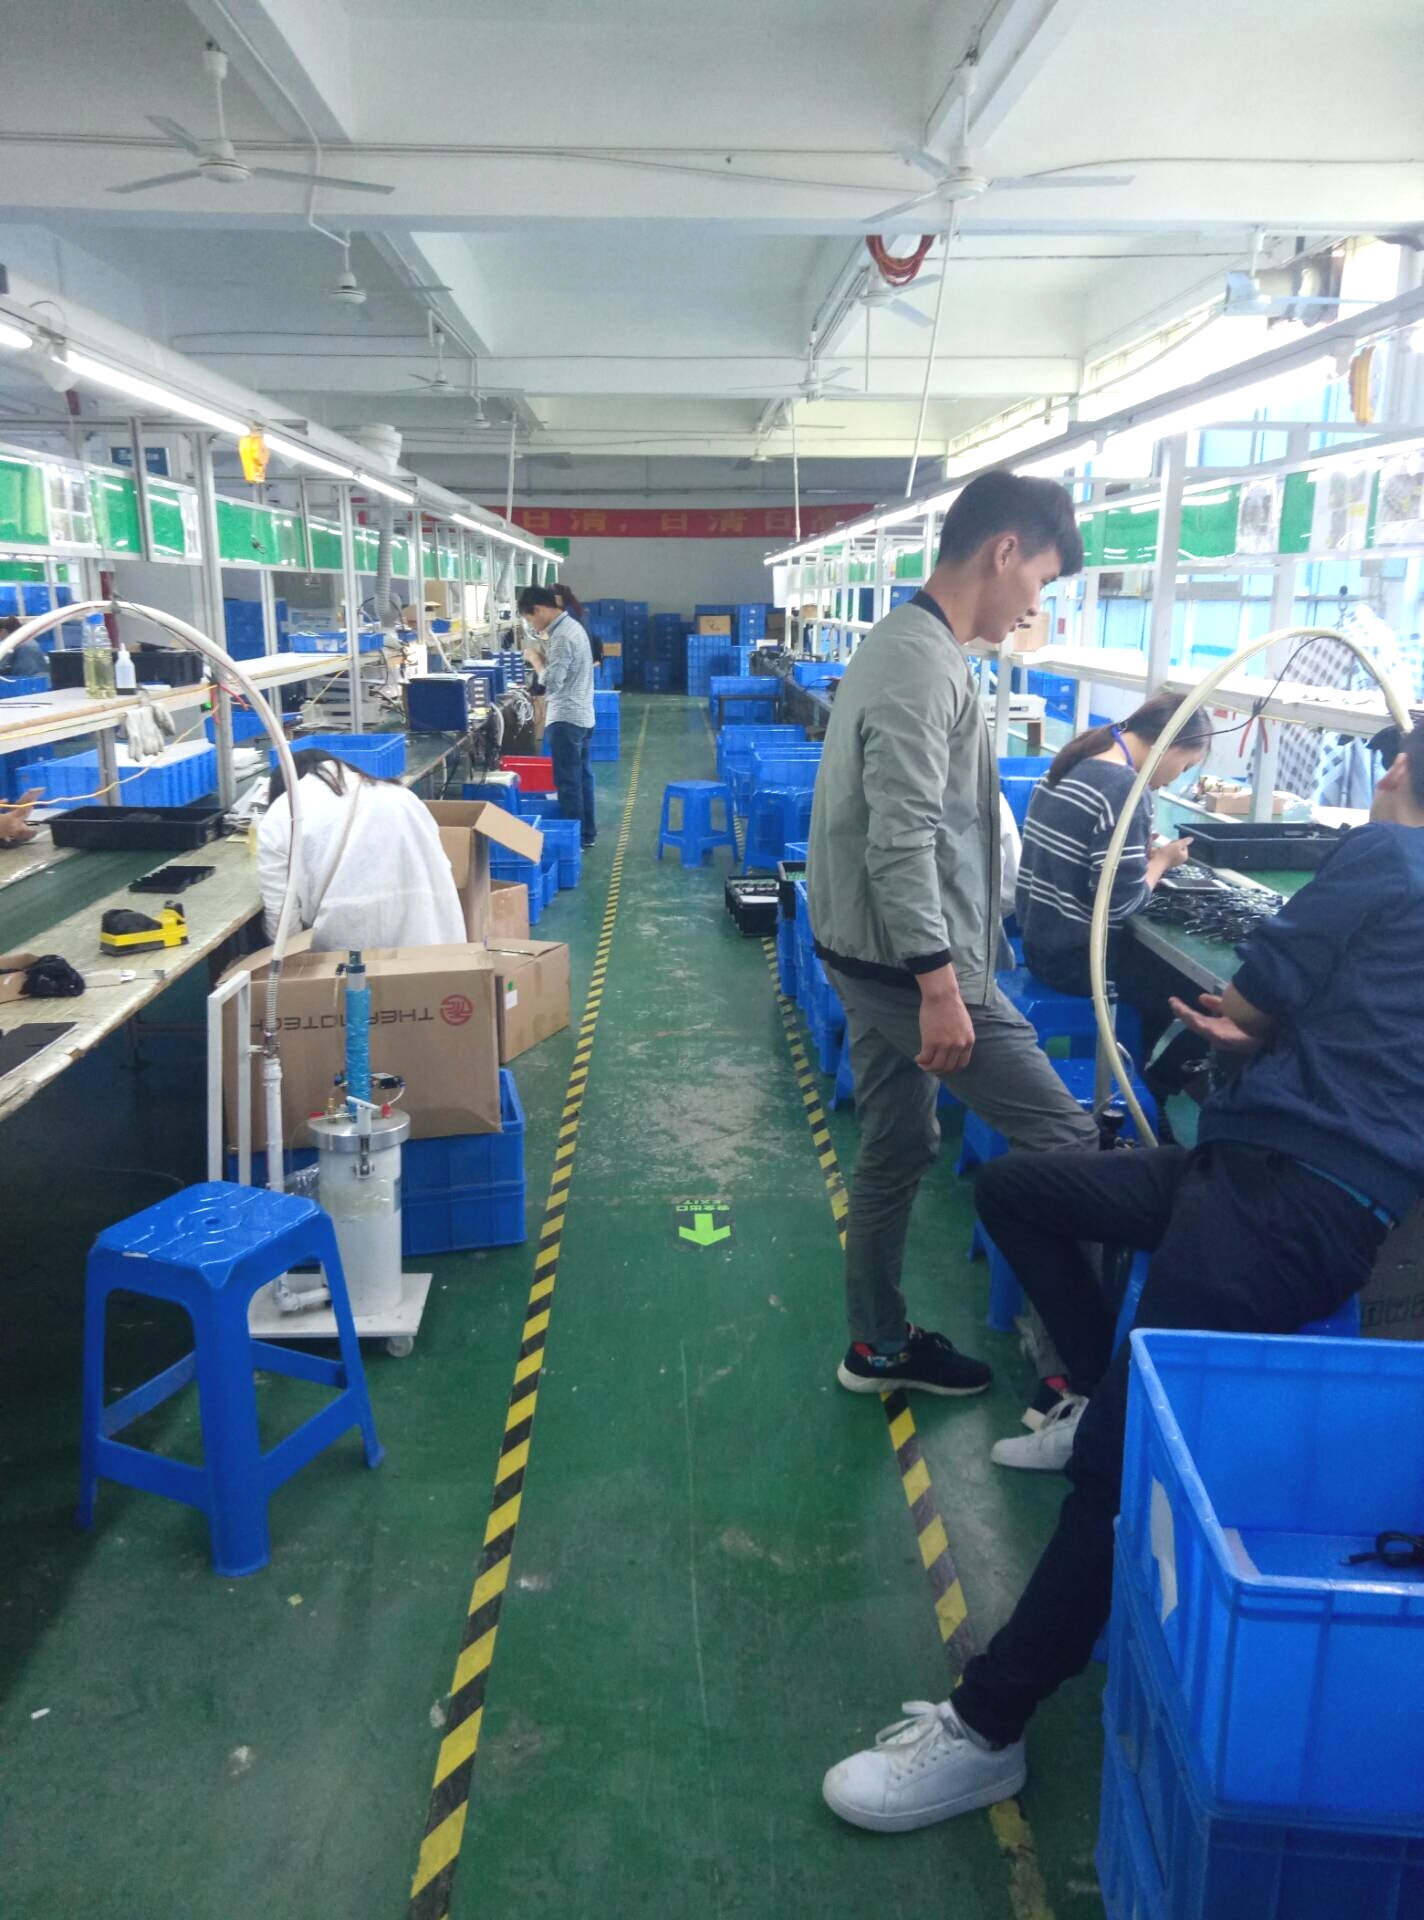 图为深圳龙华区某电子厂车间,这家工厂的规模不大,车间里主要是生产